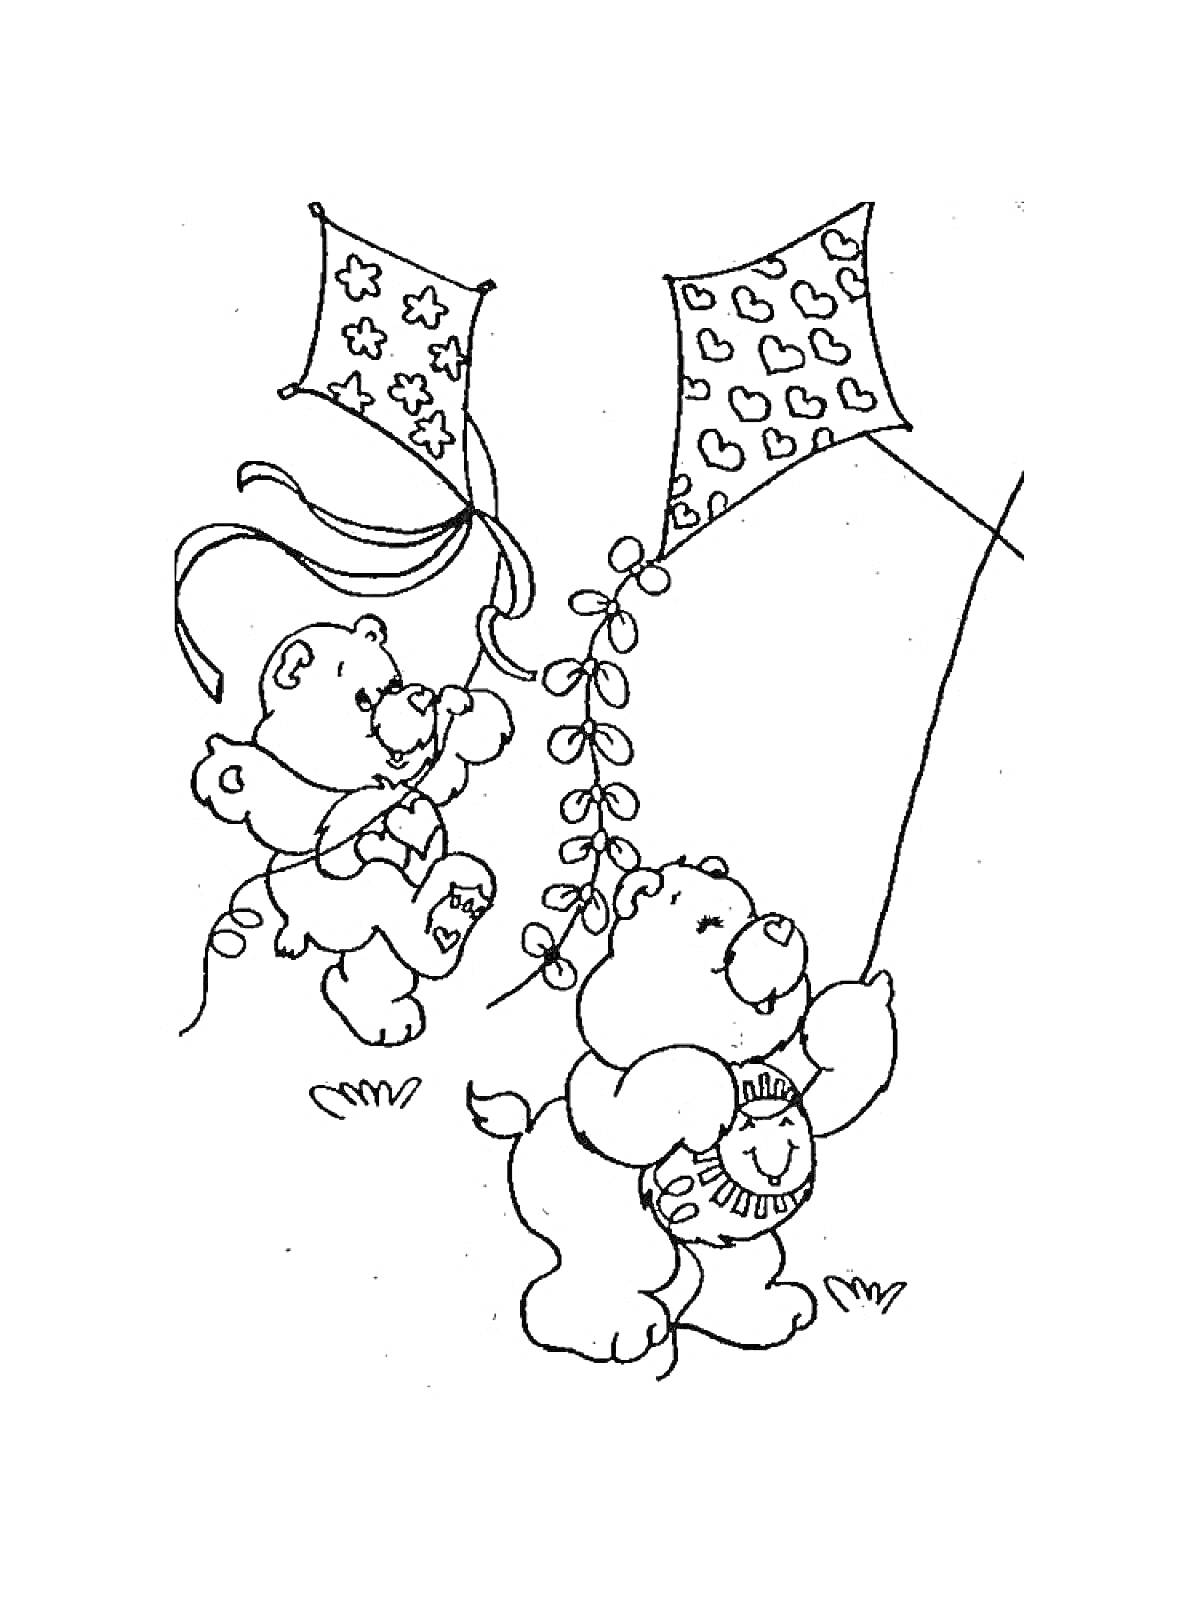 Медвежата с воздушными змеями с узорами в форме звезд и сердечек